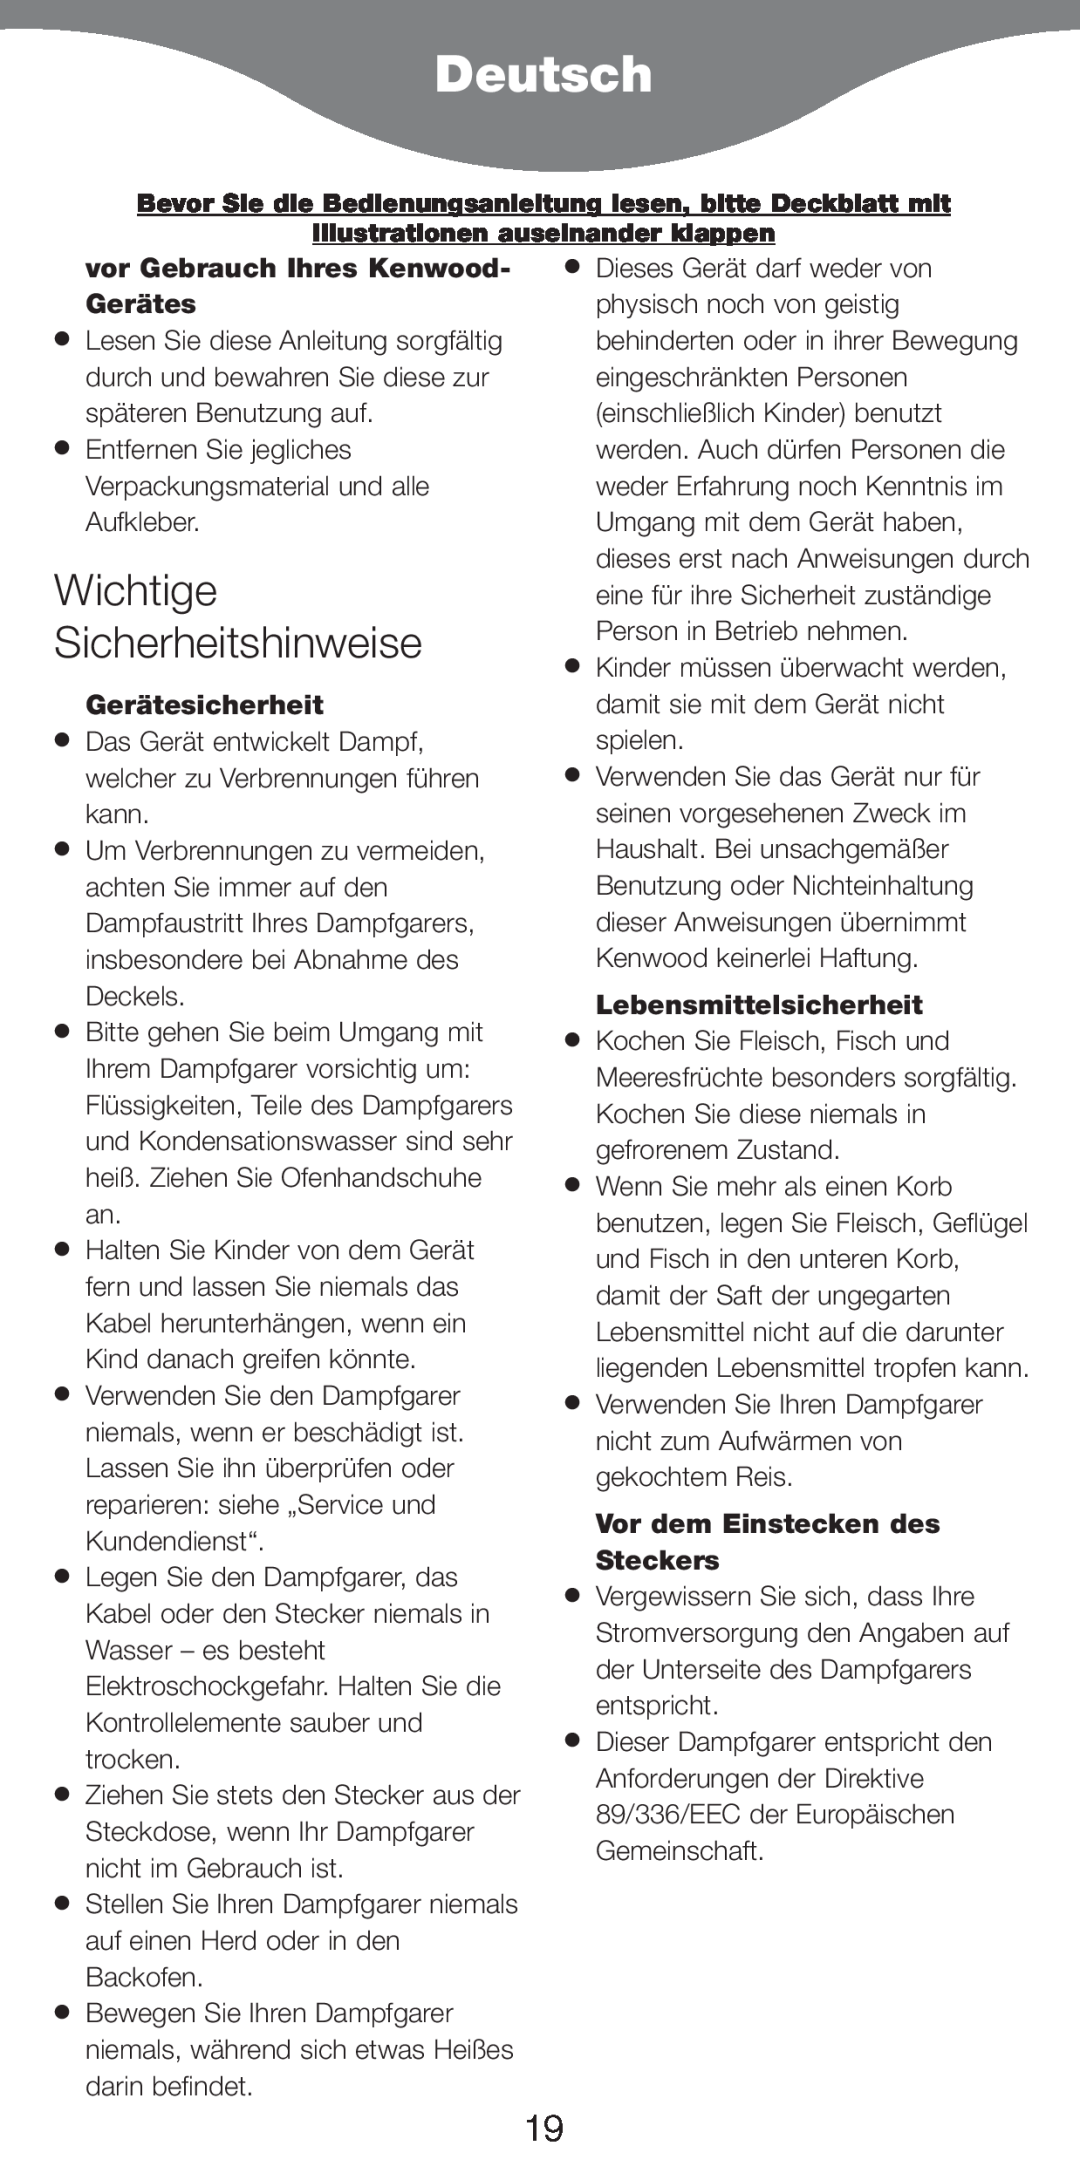 Kenwood FS620 manual Deutsch, Wichtige Sicherheitshinweise, vor Gebrauch Ihres Kenwood- Gerätes, Gerätesicherheit 